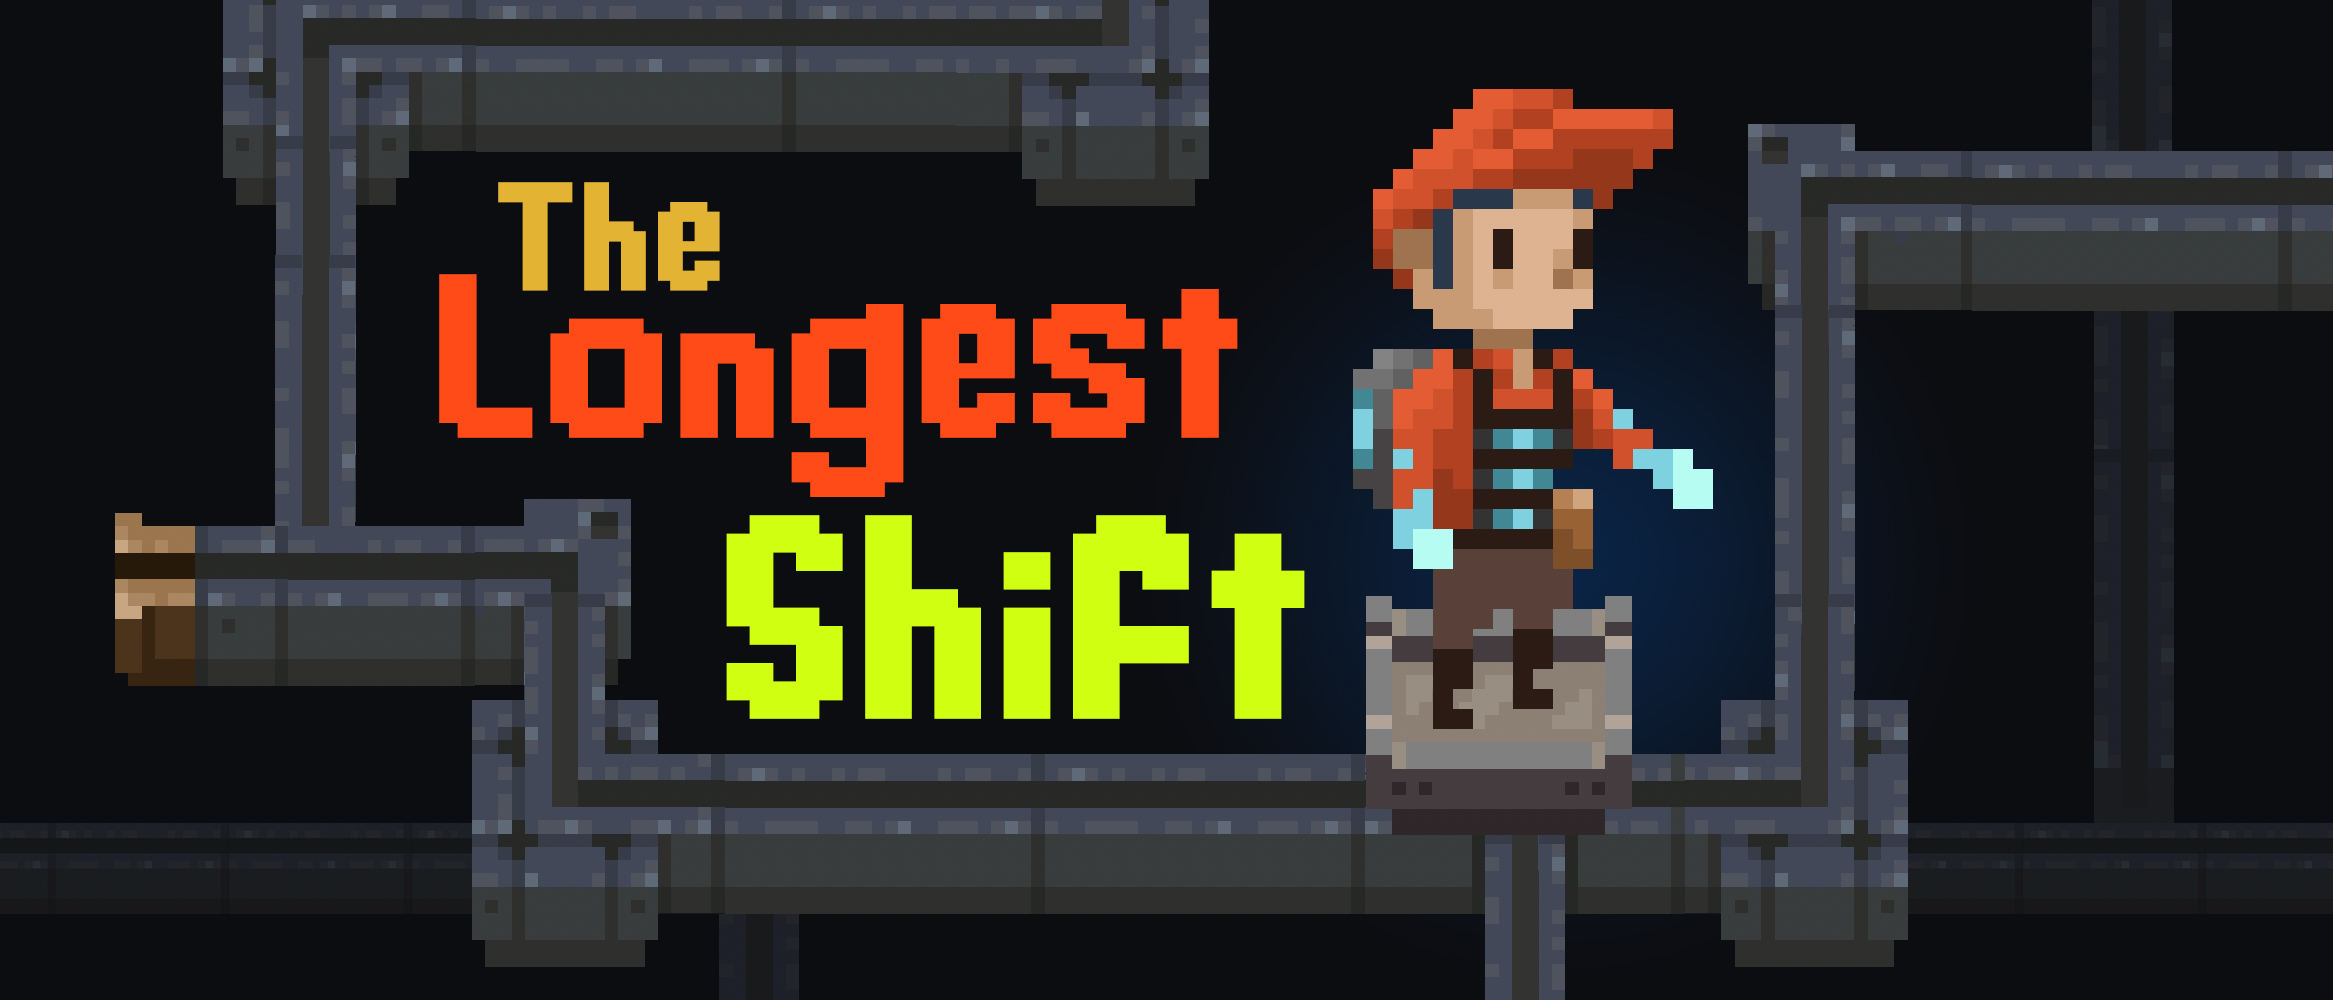 The Longest Shift